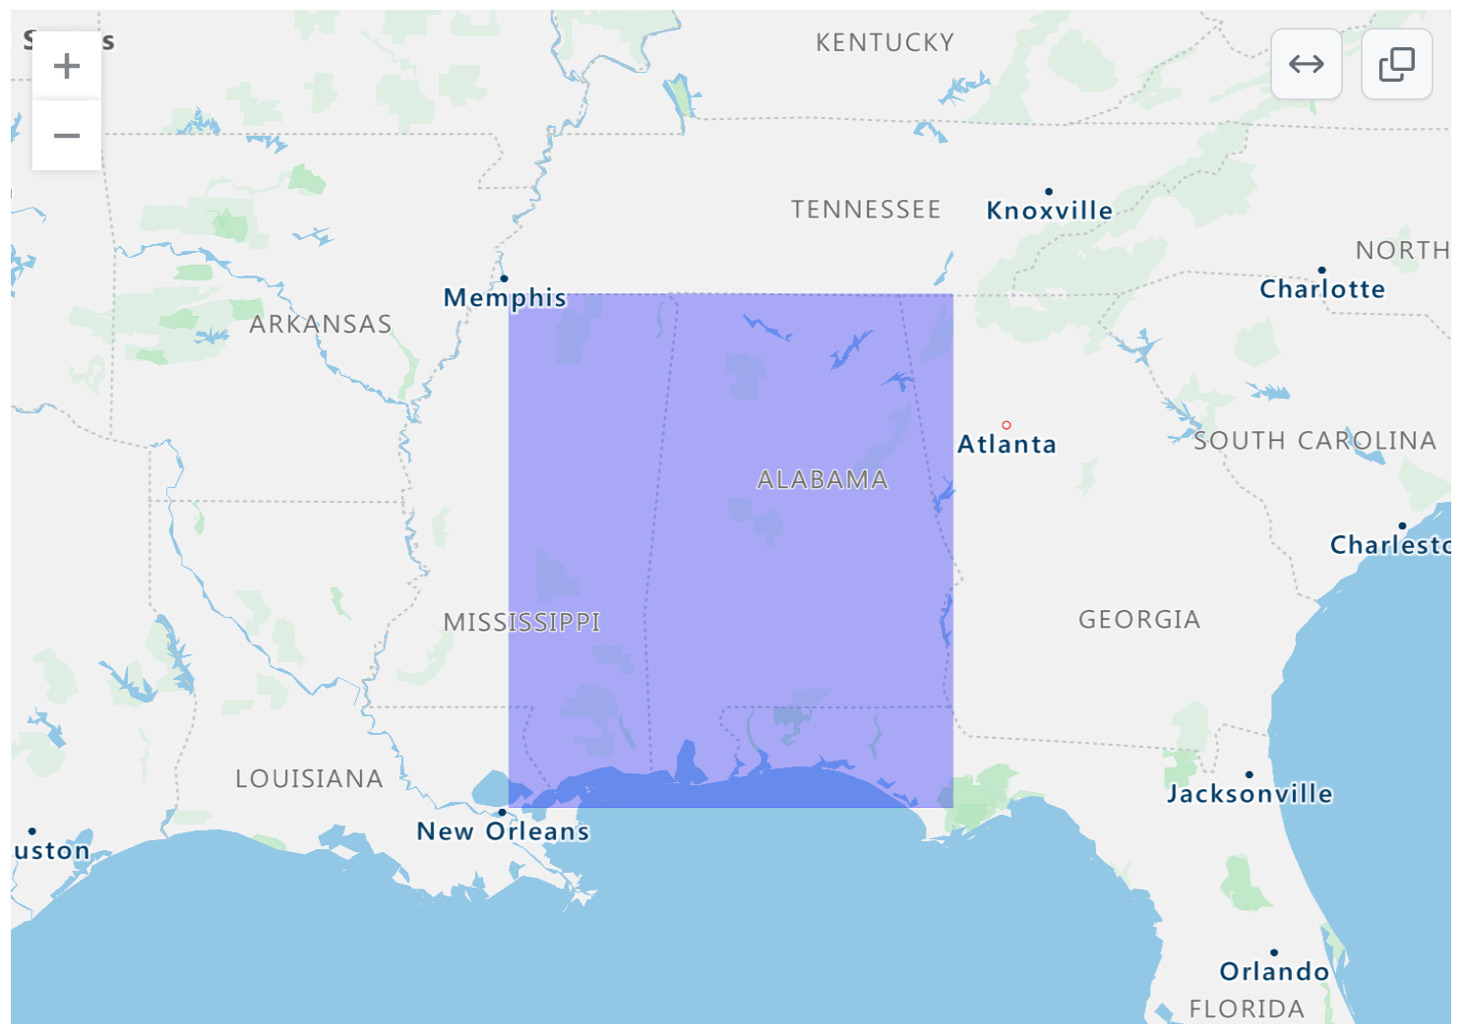 알라바마와 미시시피 일부 지역에 보라색 사각형 오버레이가 있는 남동부 미국의 렌더링된 GeoJSON 맵 스크린샷